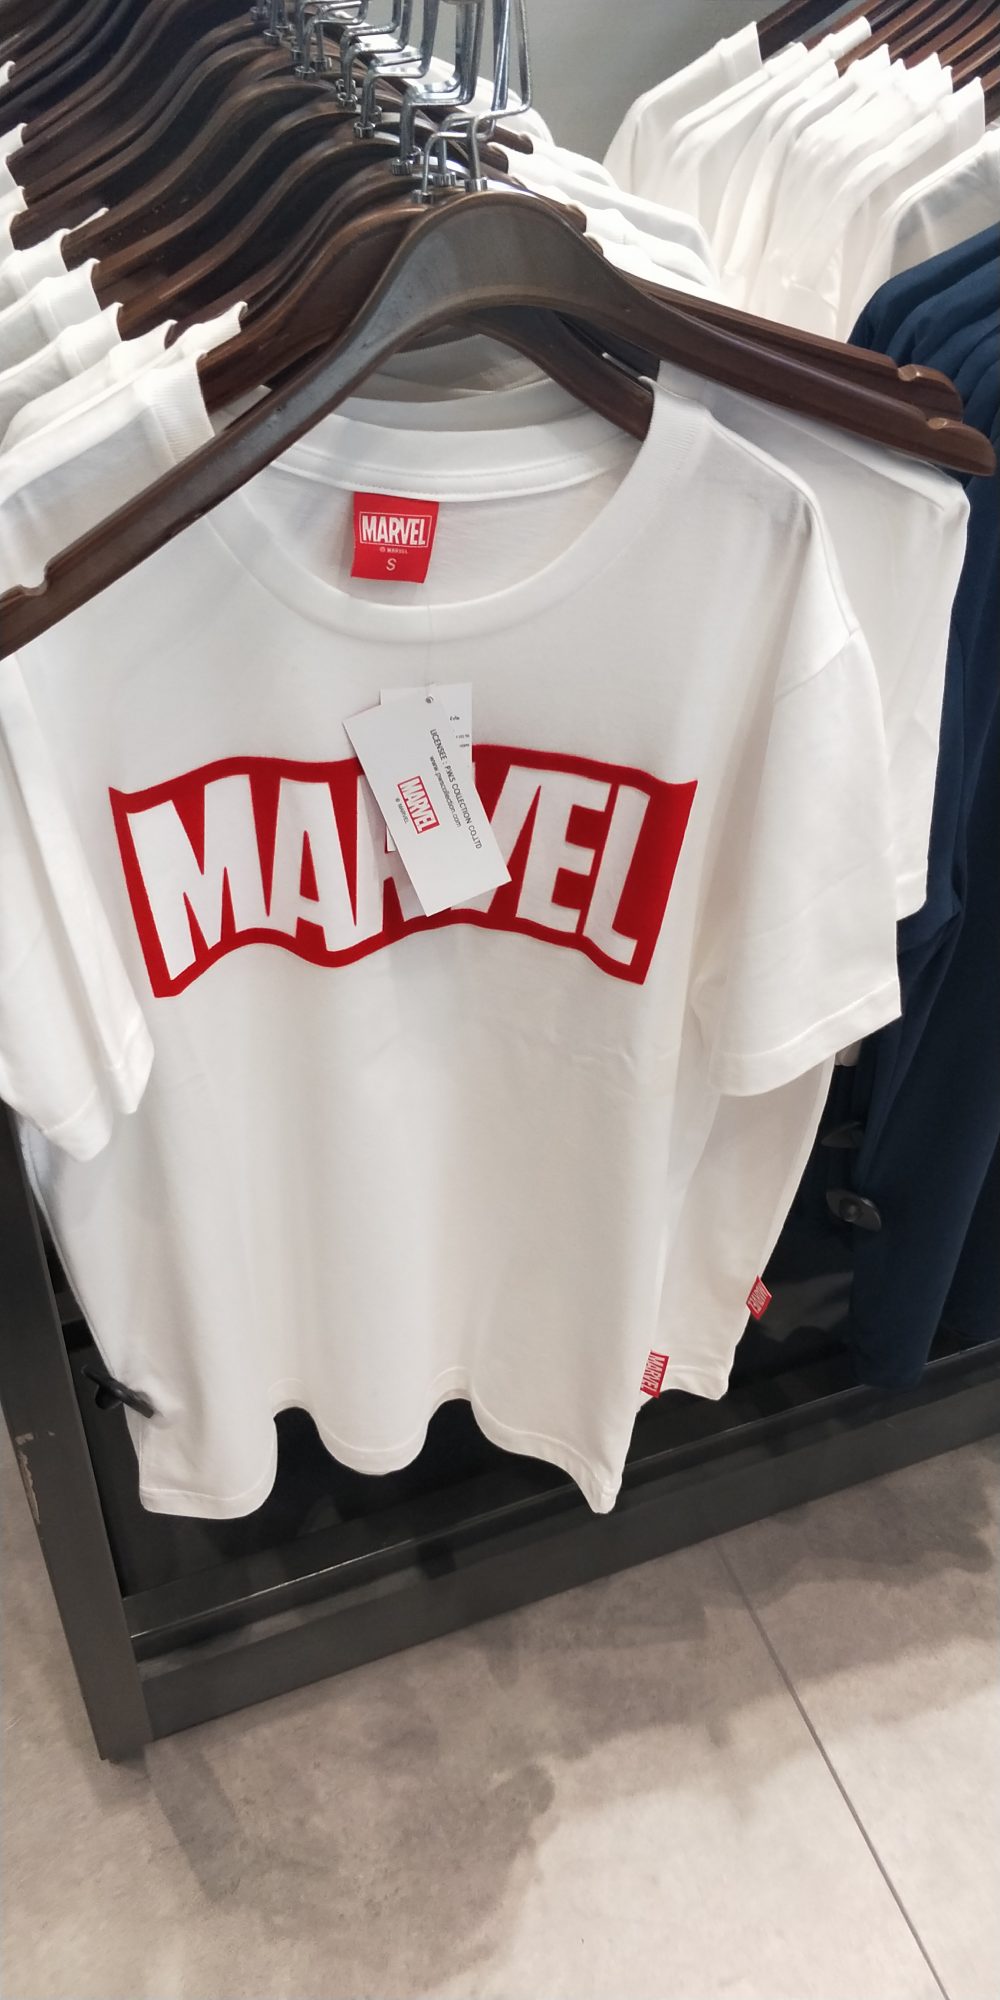 Marvel泰國漫威基地 主題周邊商品一覽 衣服周邊 - T恤 - 敗家達人推薦